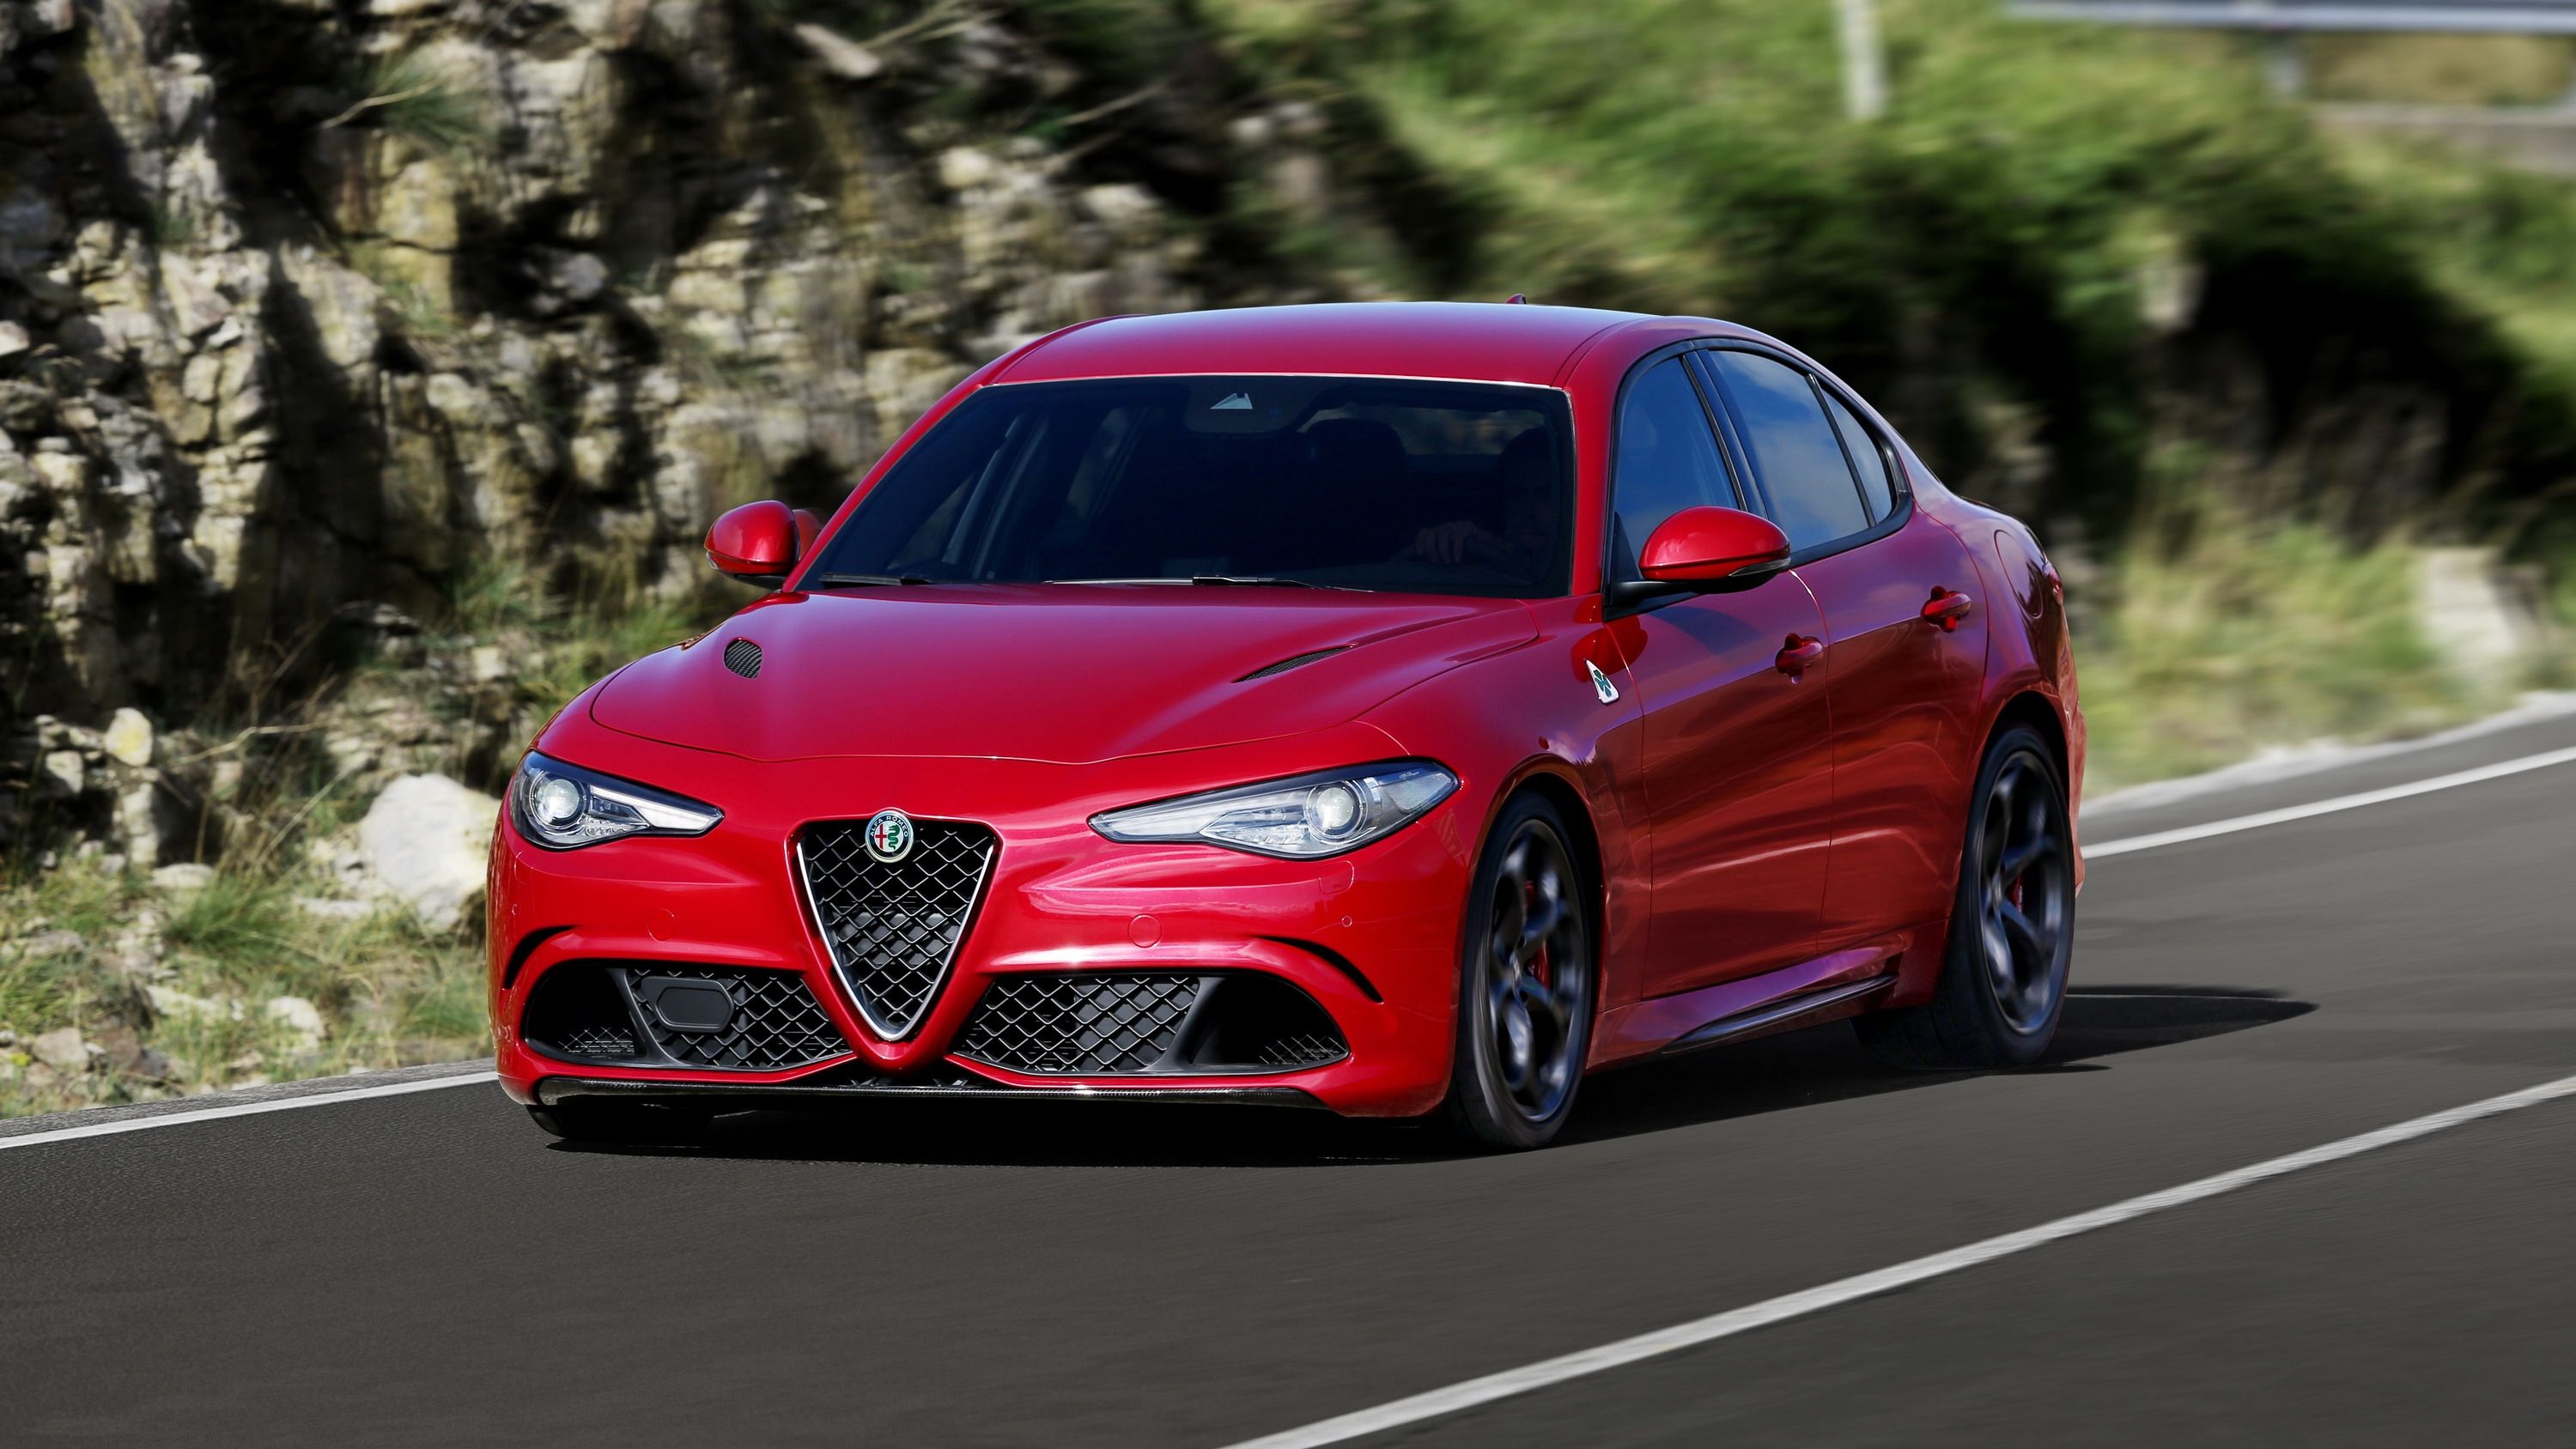 EVO Takes The Alfa Romeo Giulia QV For A Quick Spin: Video